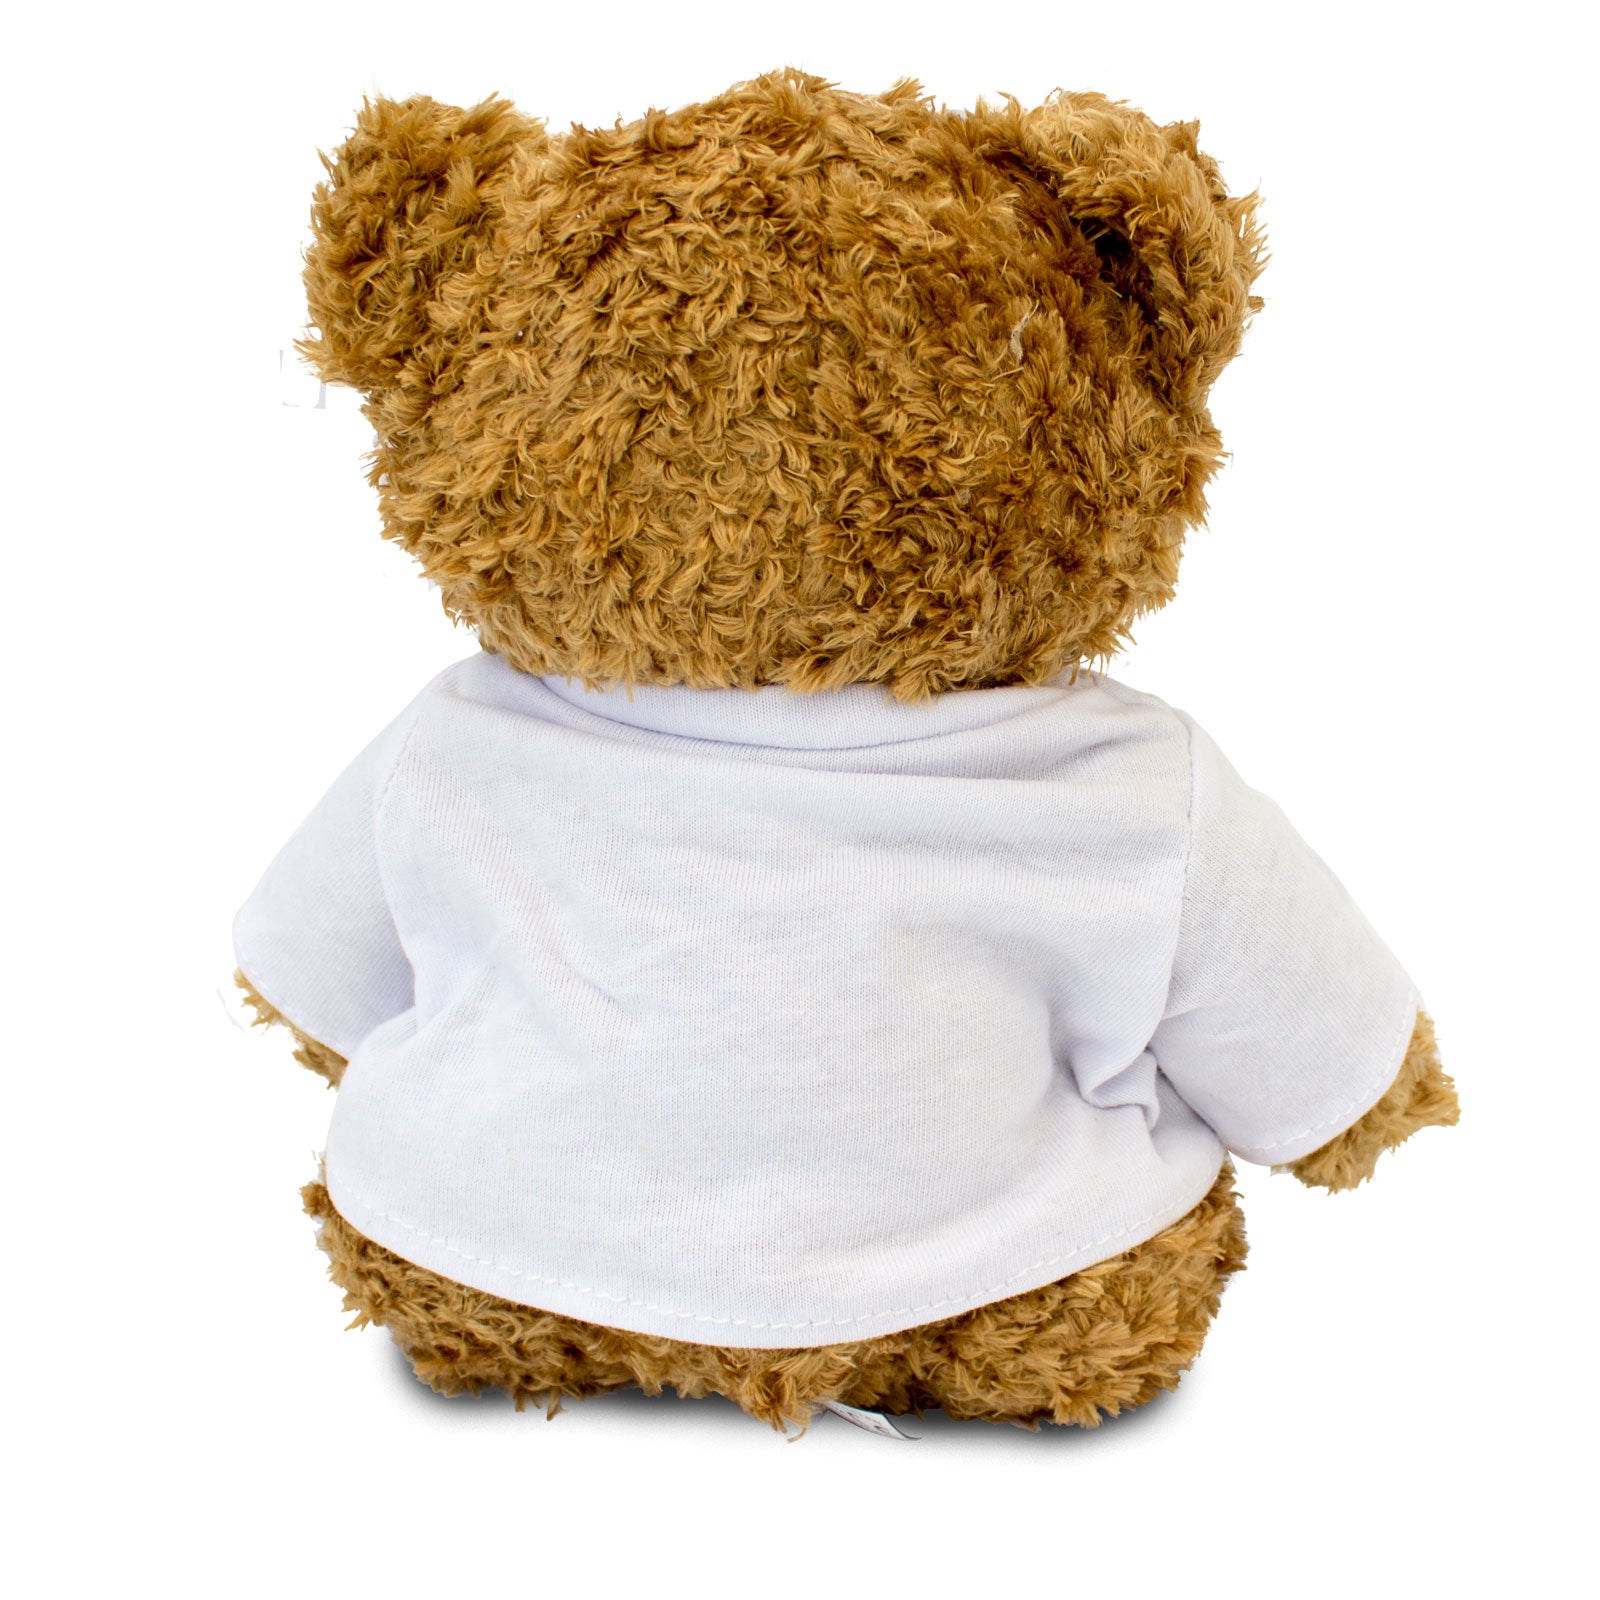 Get Well Soon Anjelica - Teddy Bear